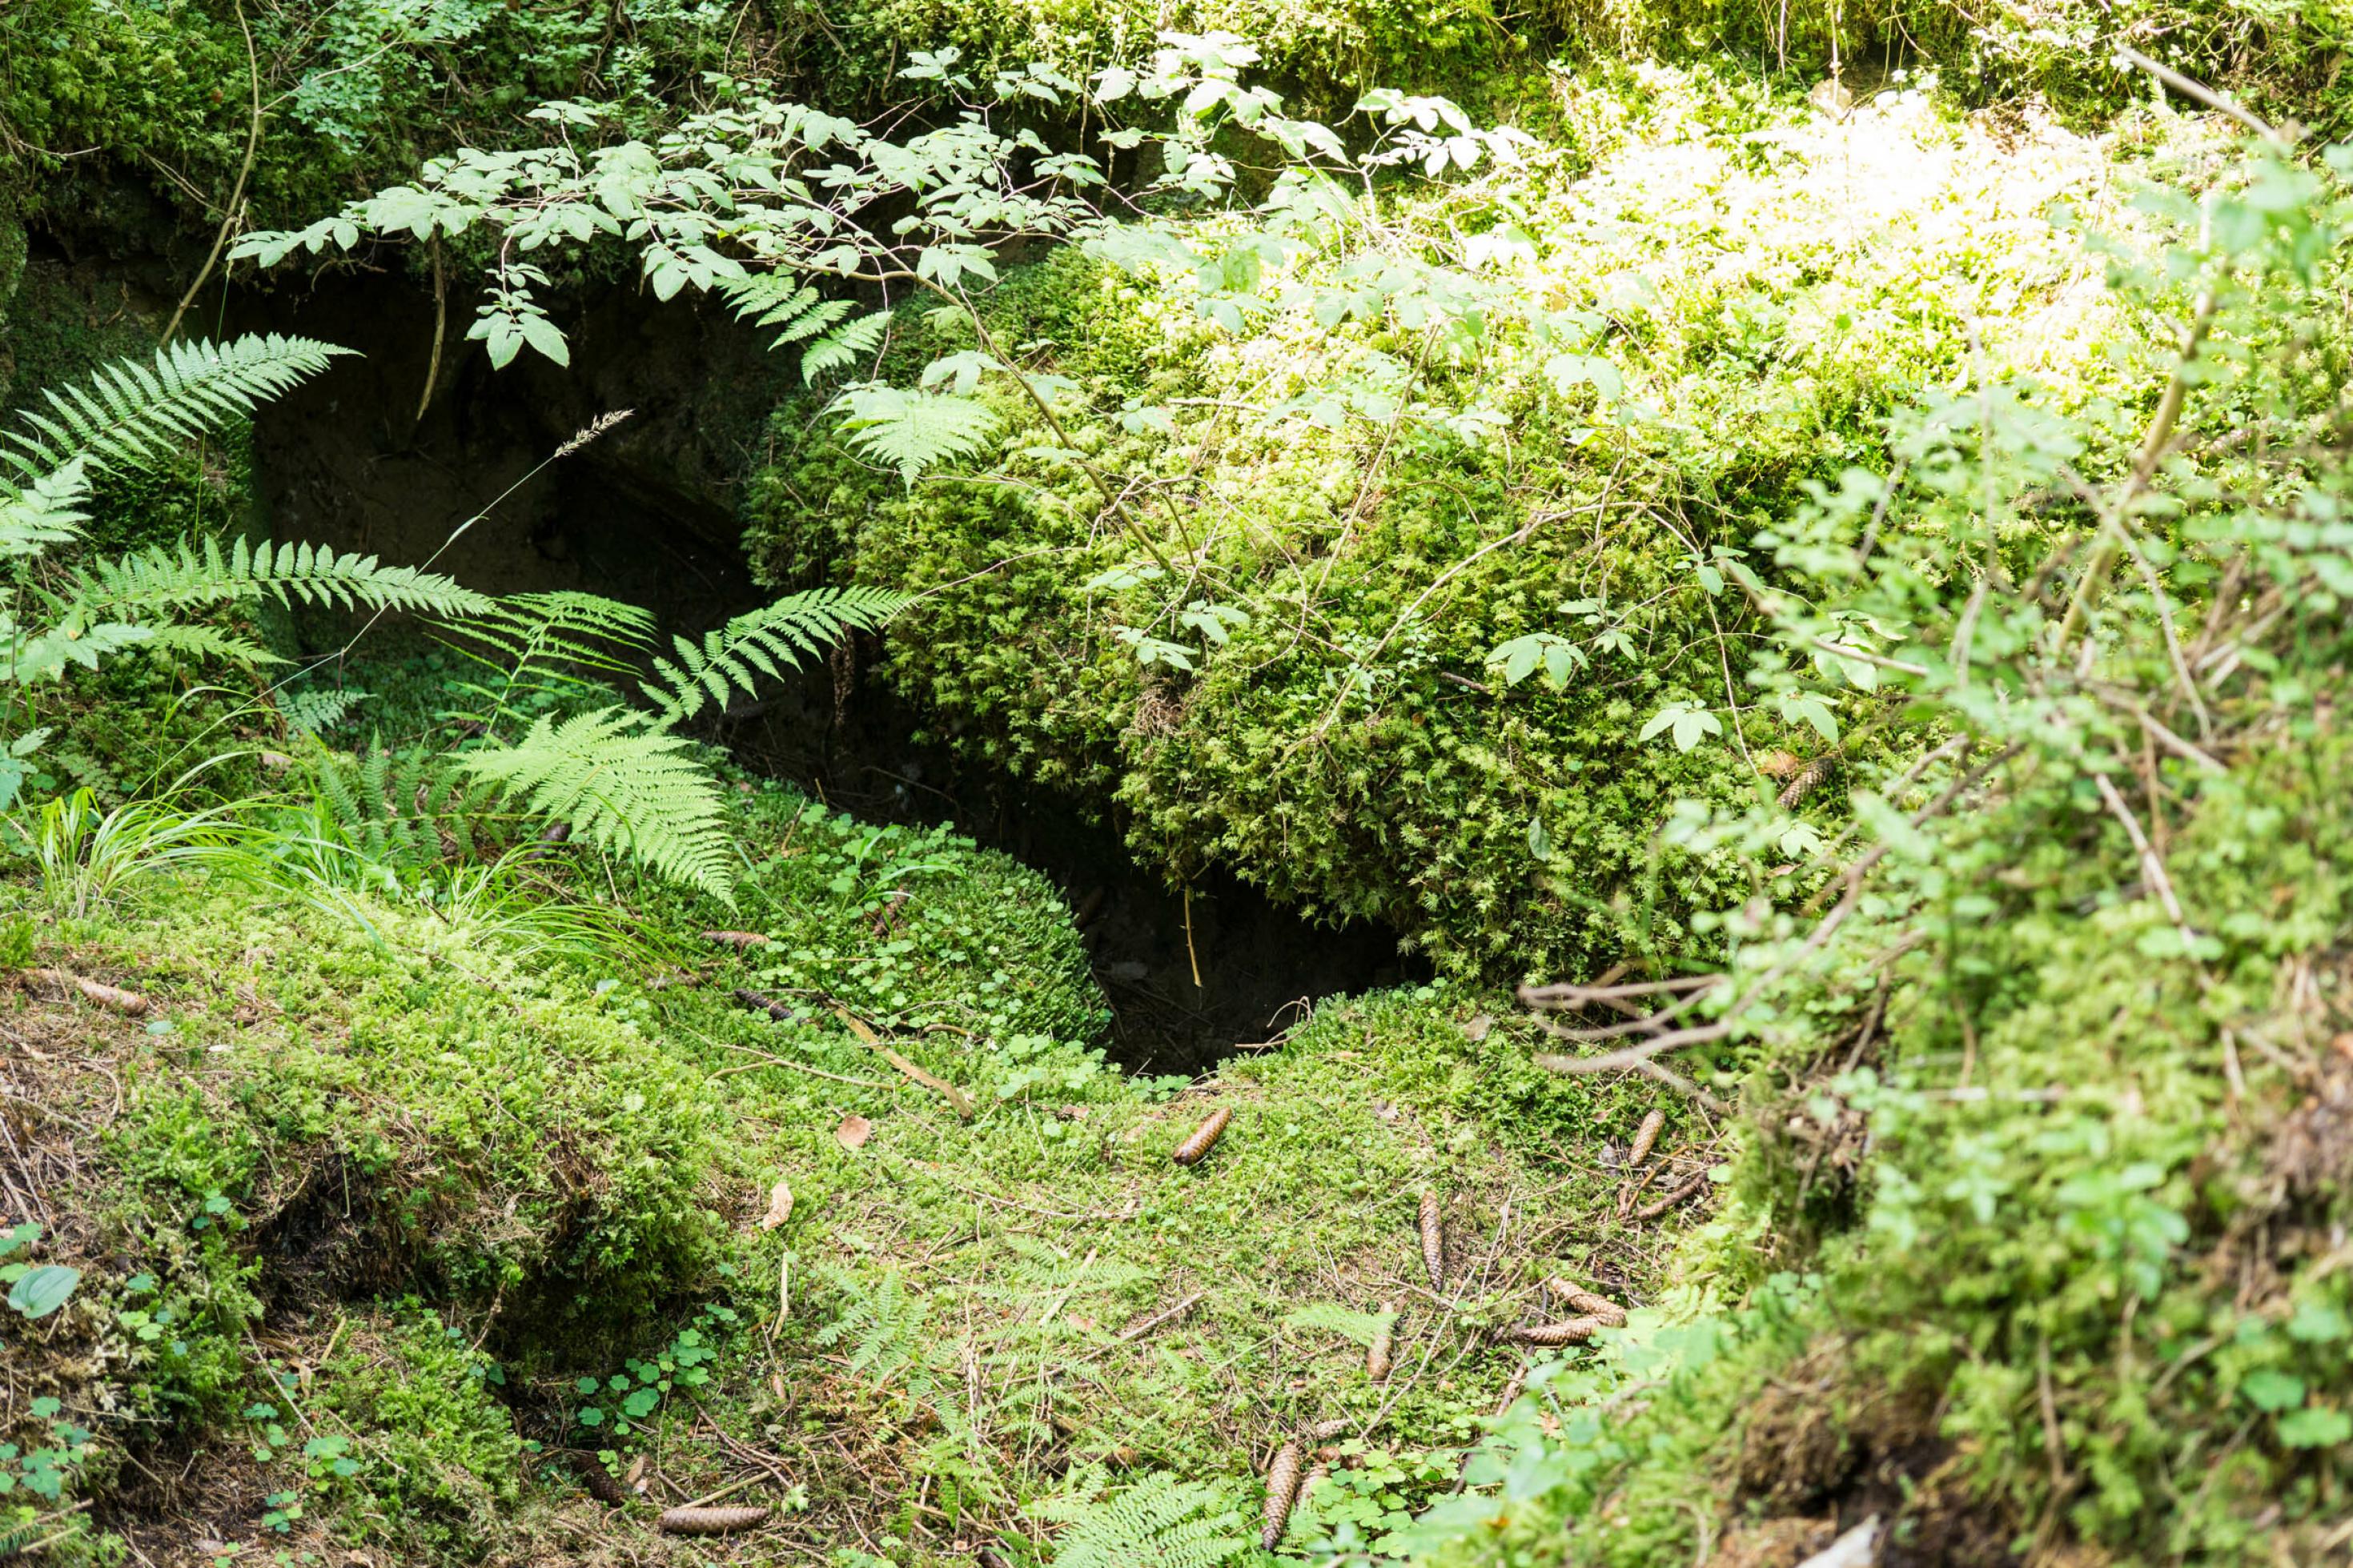 Großes dunkles Loch im Boden zwischen bemossten Felsen im Wald.